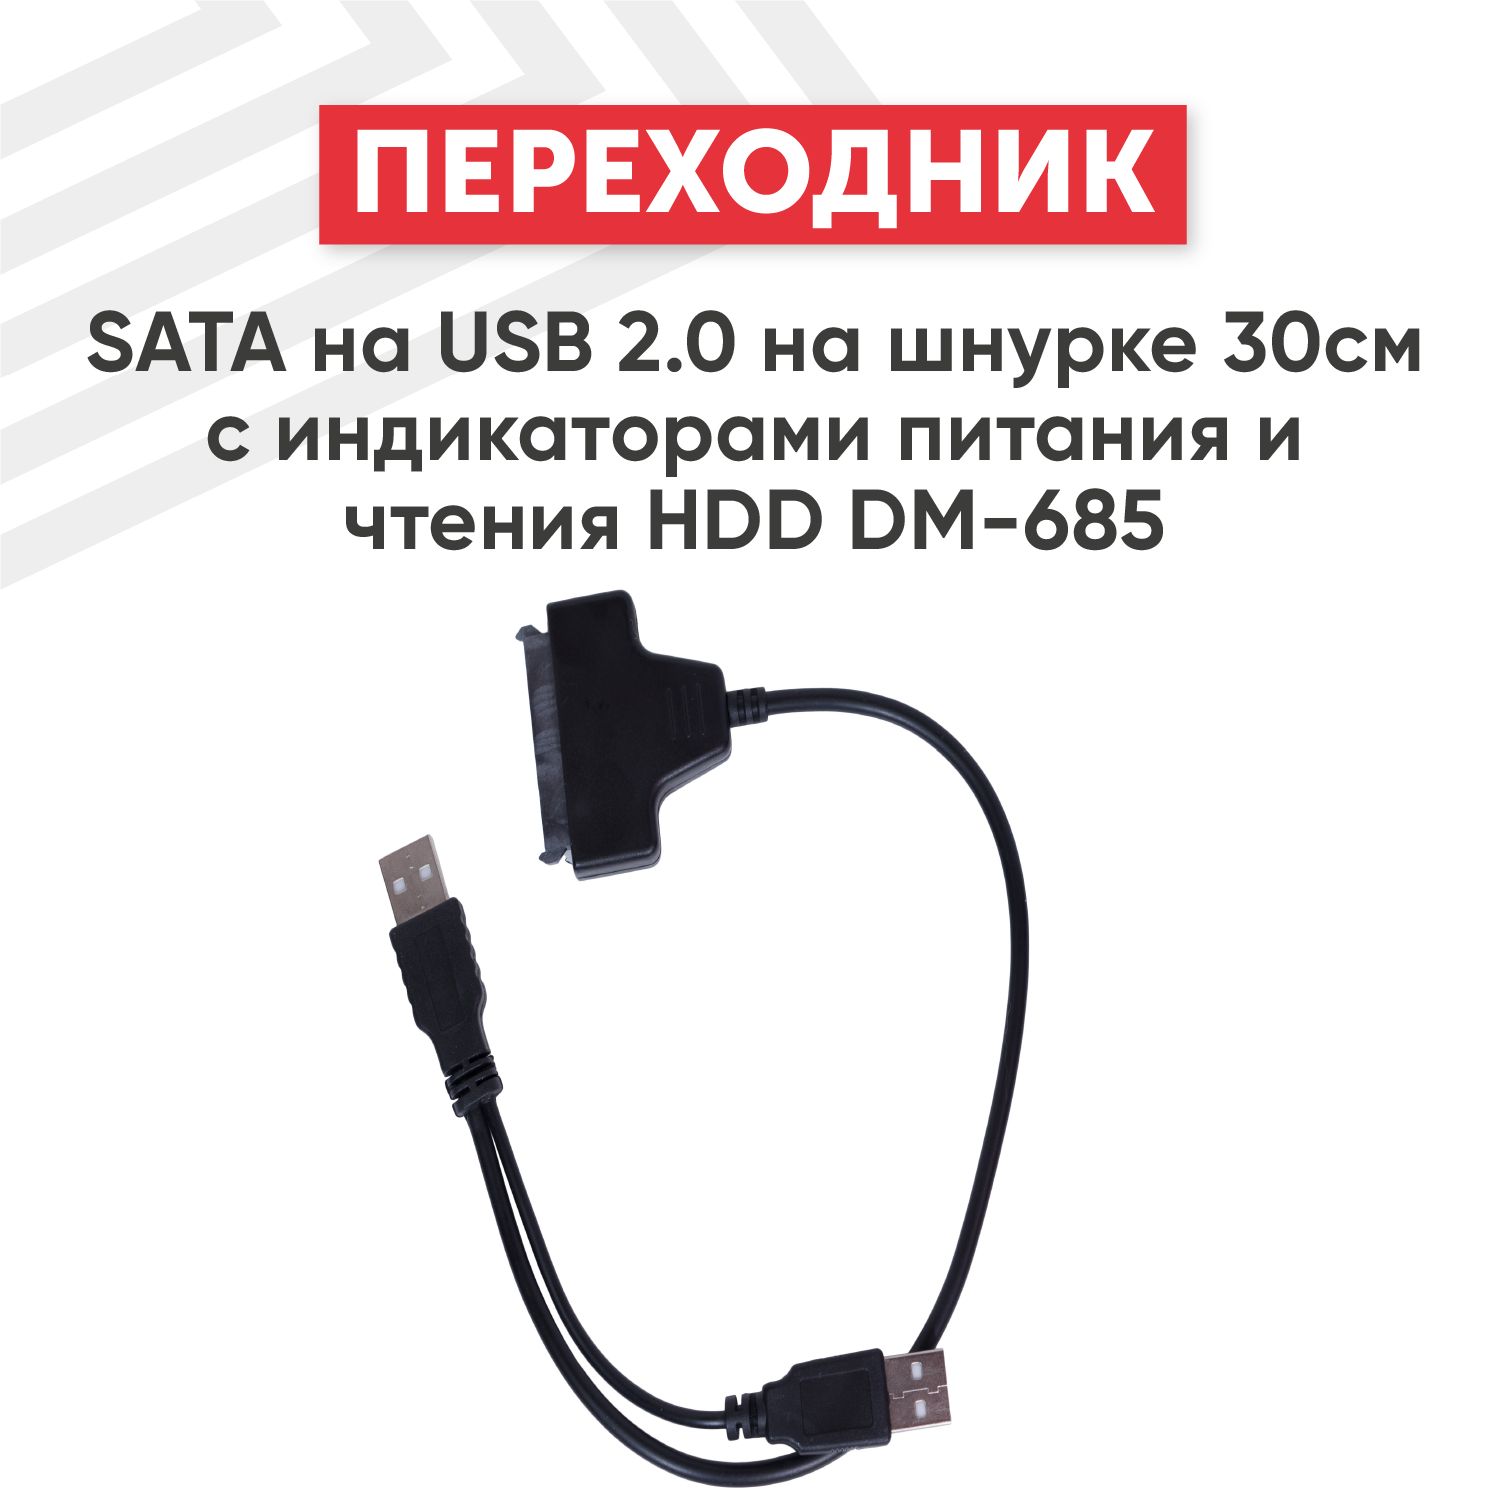 Что можно сделать из не нужного USB-SATA переходника? — Неофициальный блог натяжныепотолкибрянск.рф